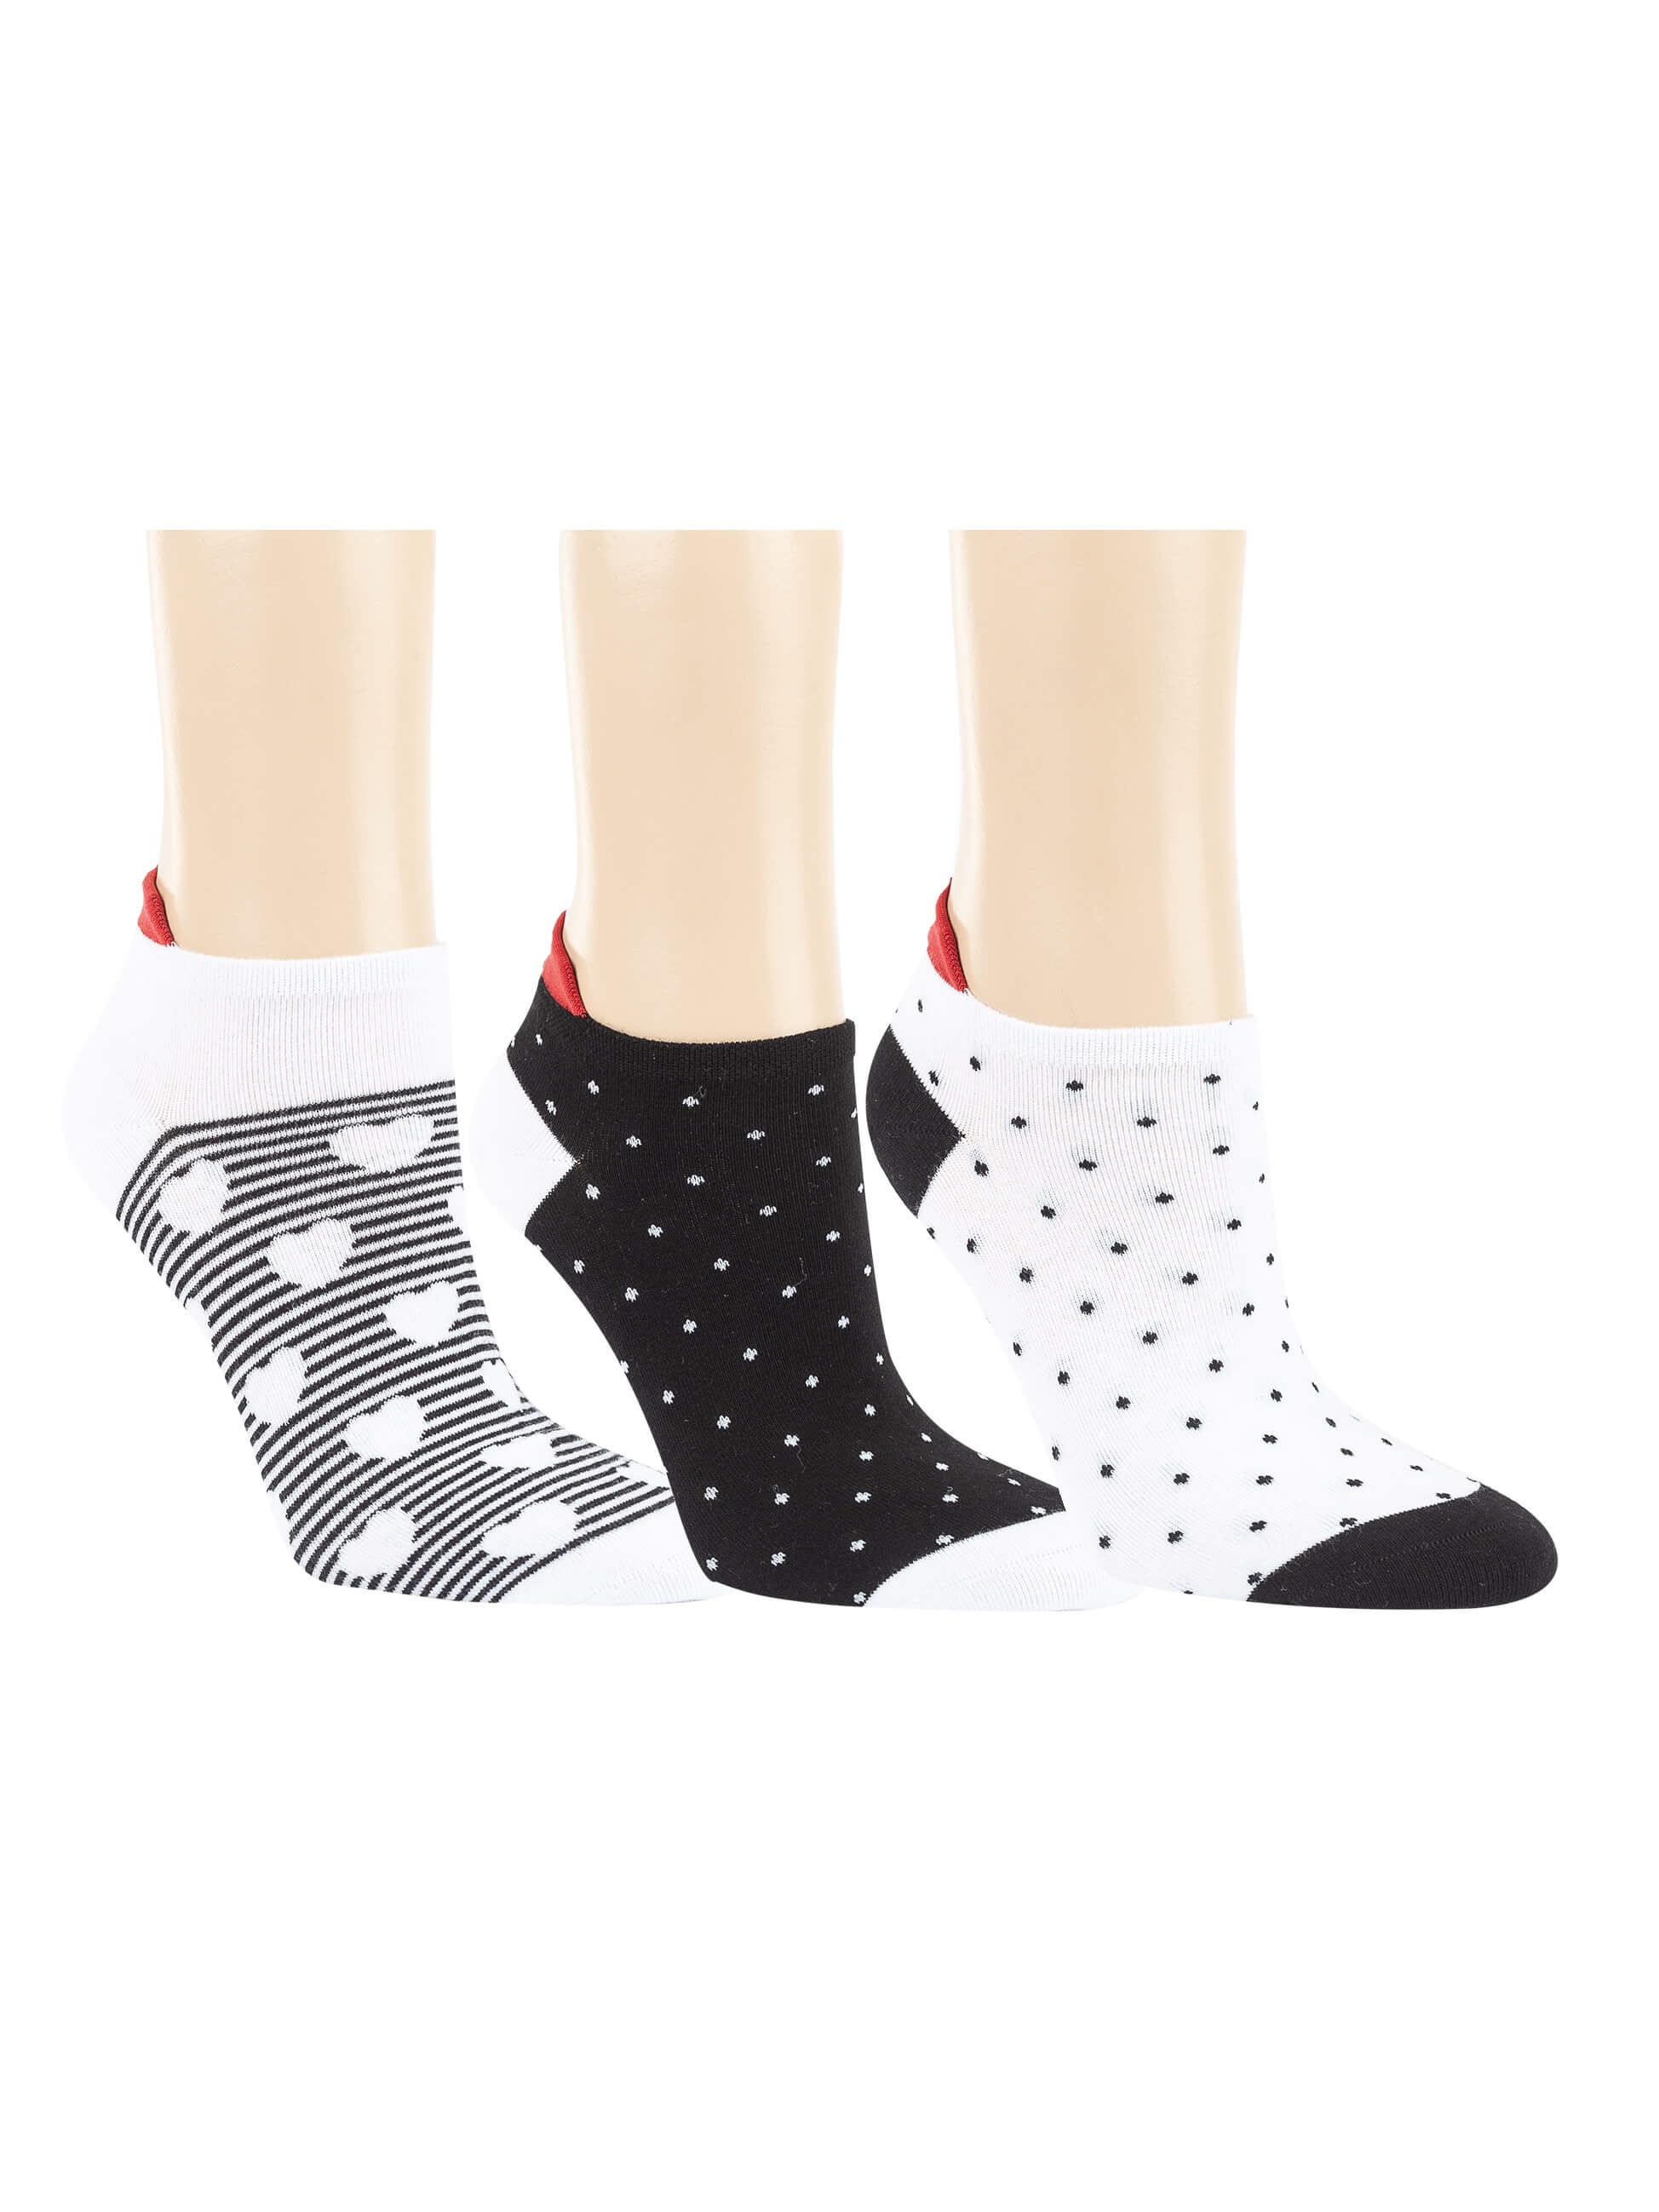 Damen - Sneaker Socken - Black&White - 6,10 EUR